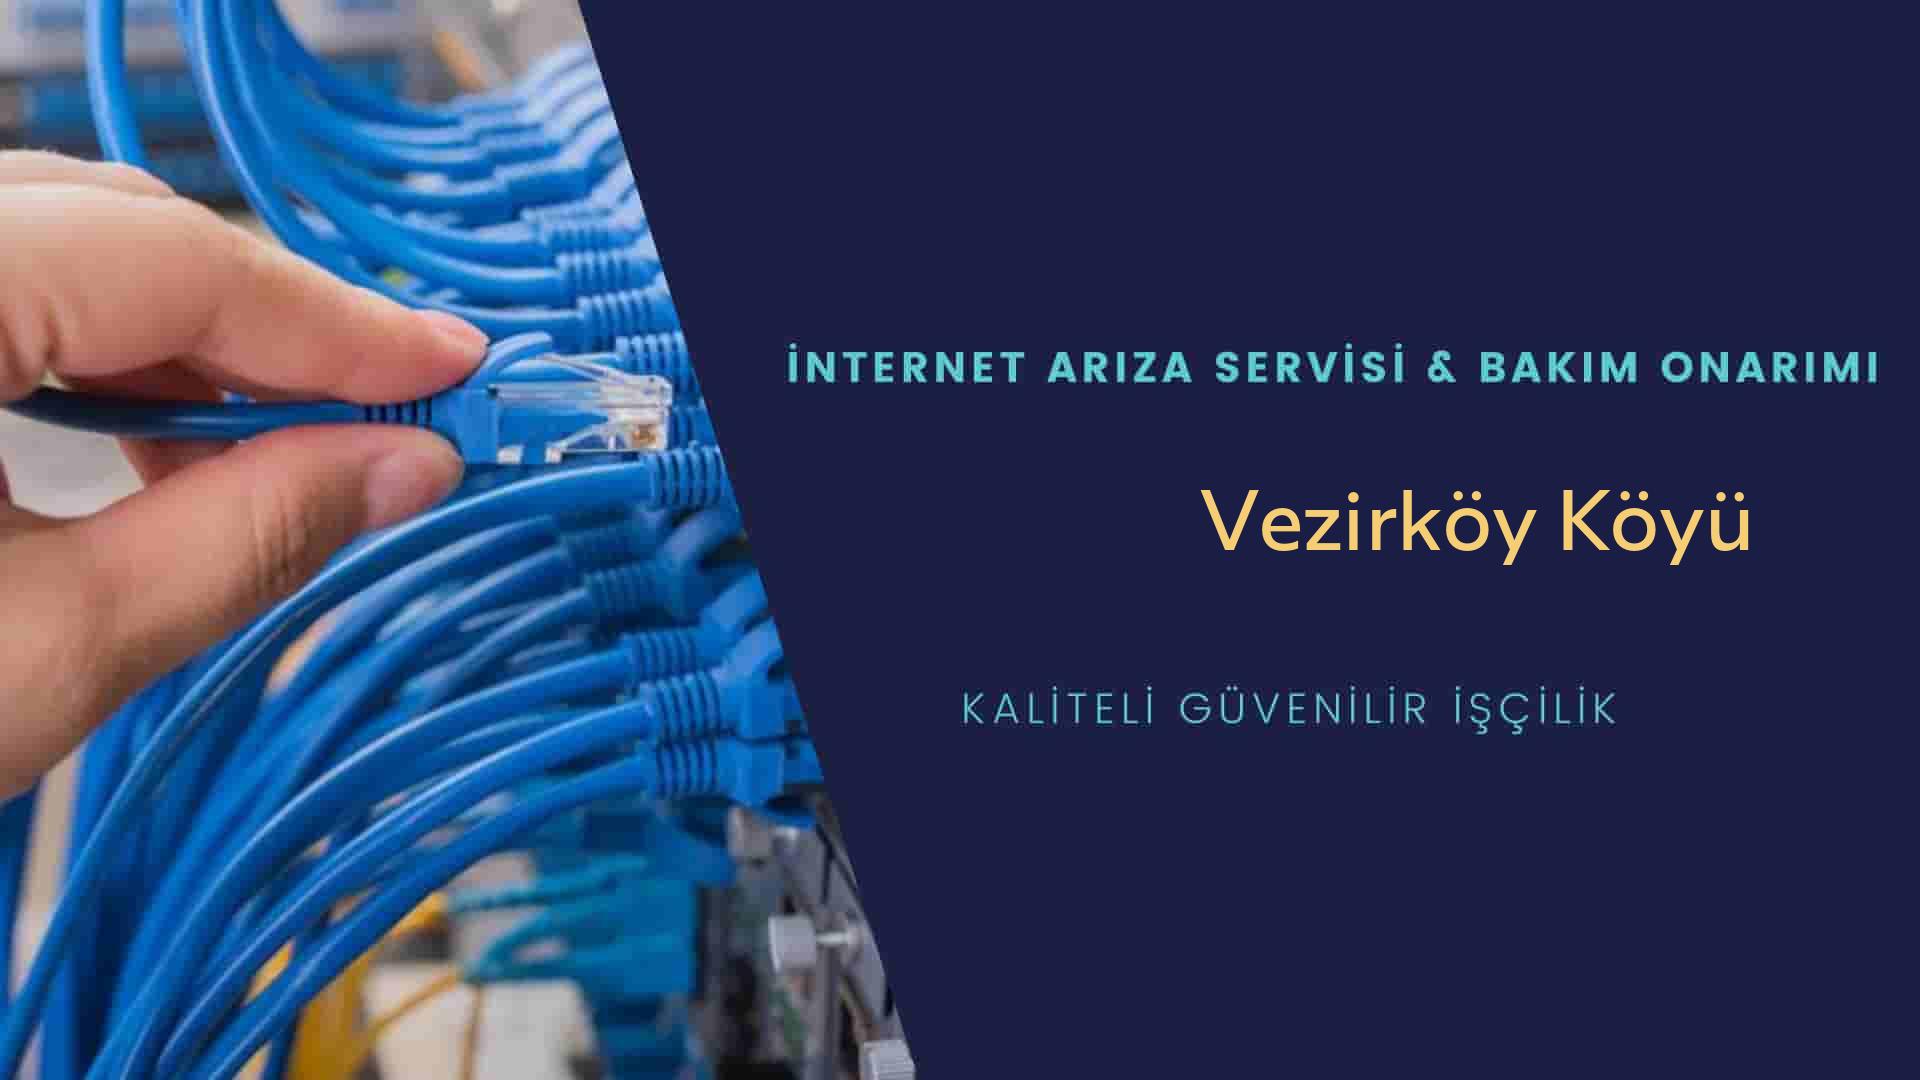 Vezirköy Köyü internet kablosu çekimi yapan yerler veya elektrikçiler mi? arıyorsunuz doğru yerdesiniz o zaman sizlere 7/24 yardımcı olacak profesyonel ustalarımız bir telefon kadar yakındır size.